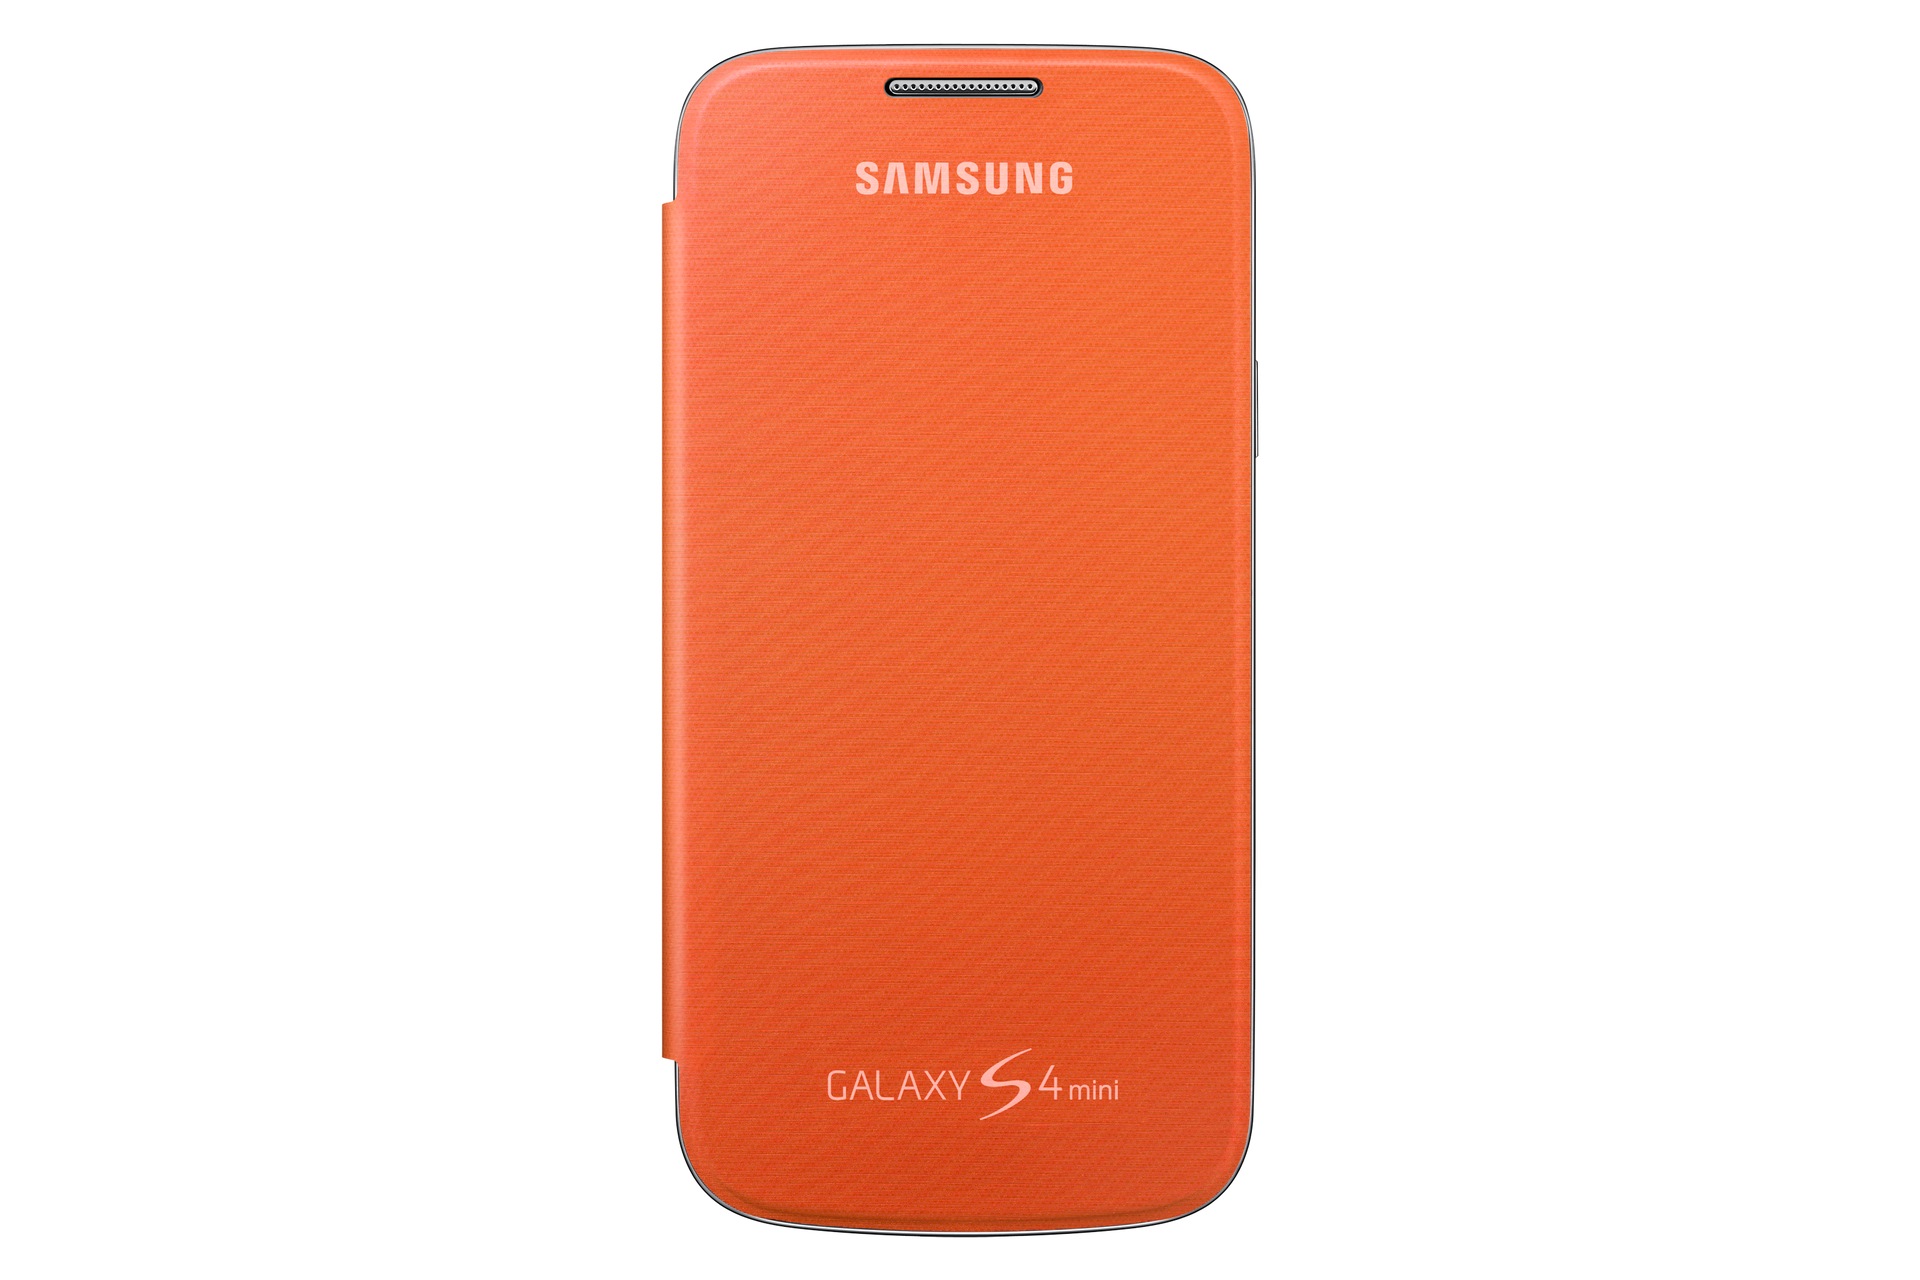 Rechtzetten Continu Vervelend Galaxy S4 mini Flip Case | Samsung Support IE